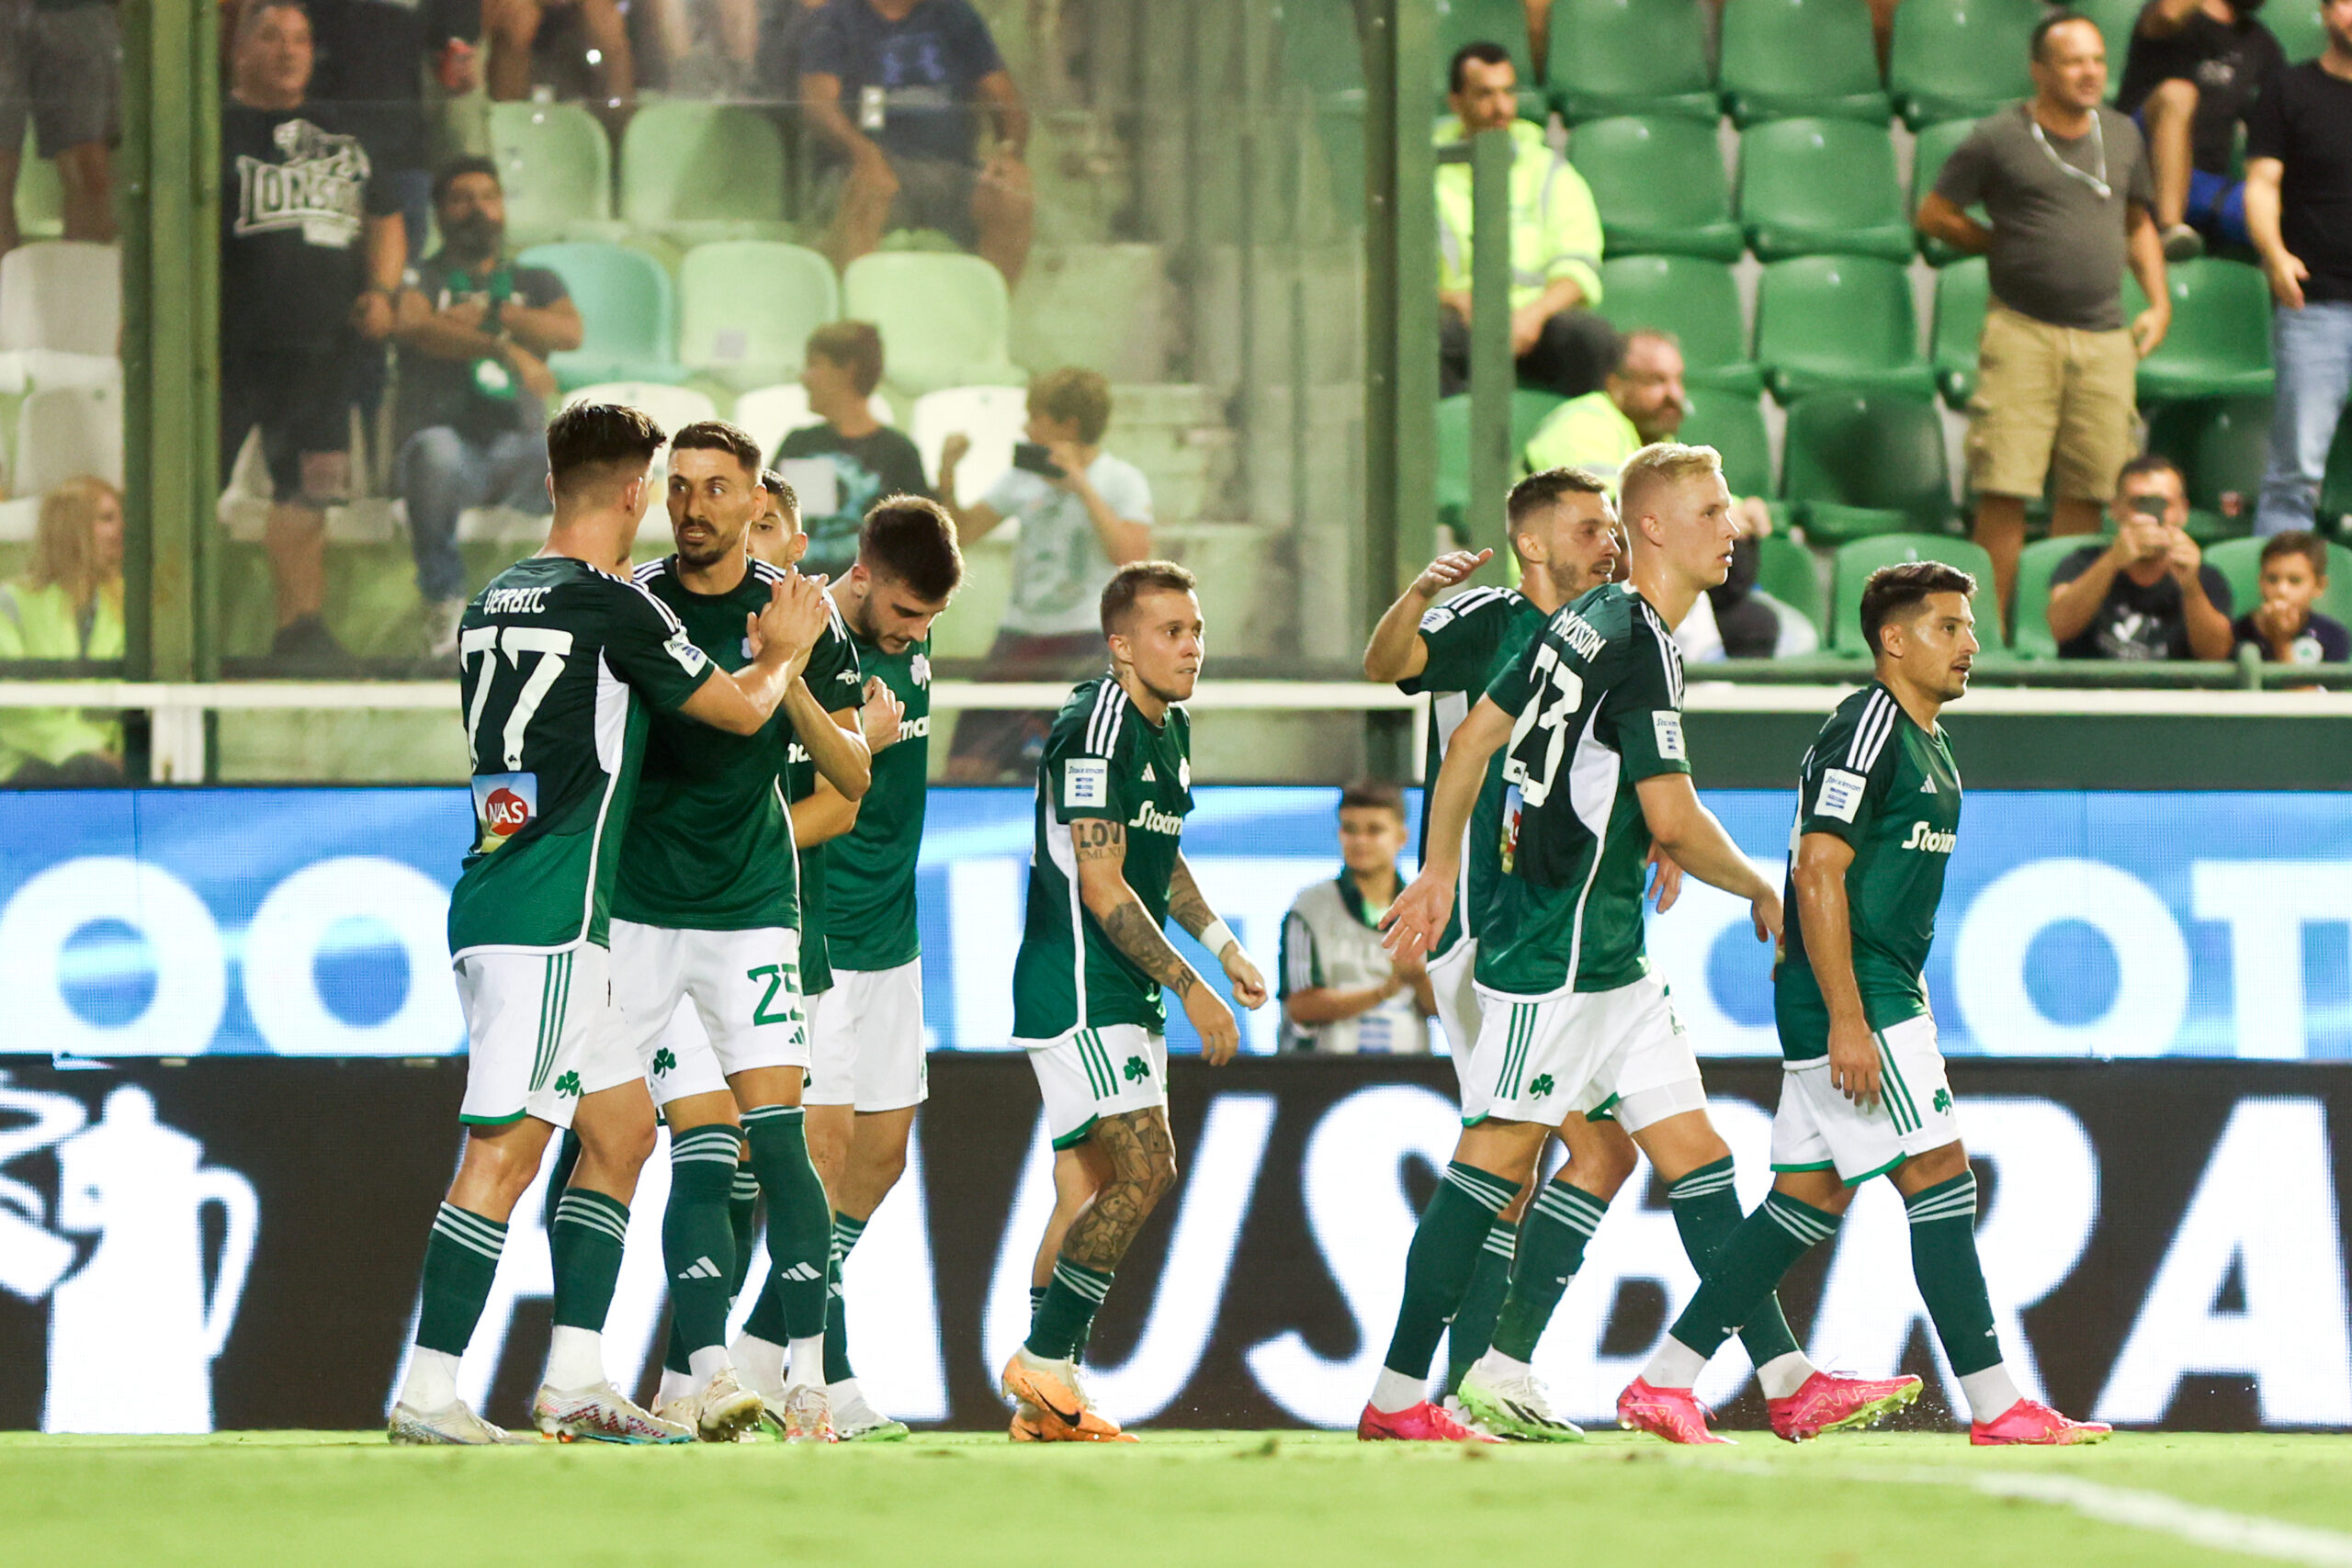 Παναθηναϊκός - Βόλος 3-0: Οι πράσινοι ήταν επιβλητικοί στην πρεμιέρα τους και δήλωσαν έτοιμοι για τον "τελικό" με την Μπράγκα